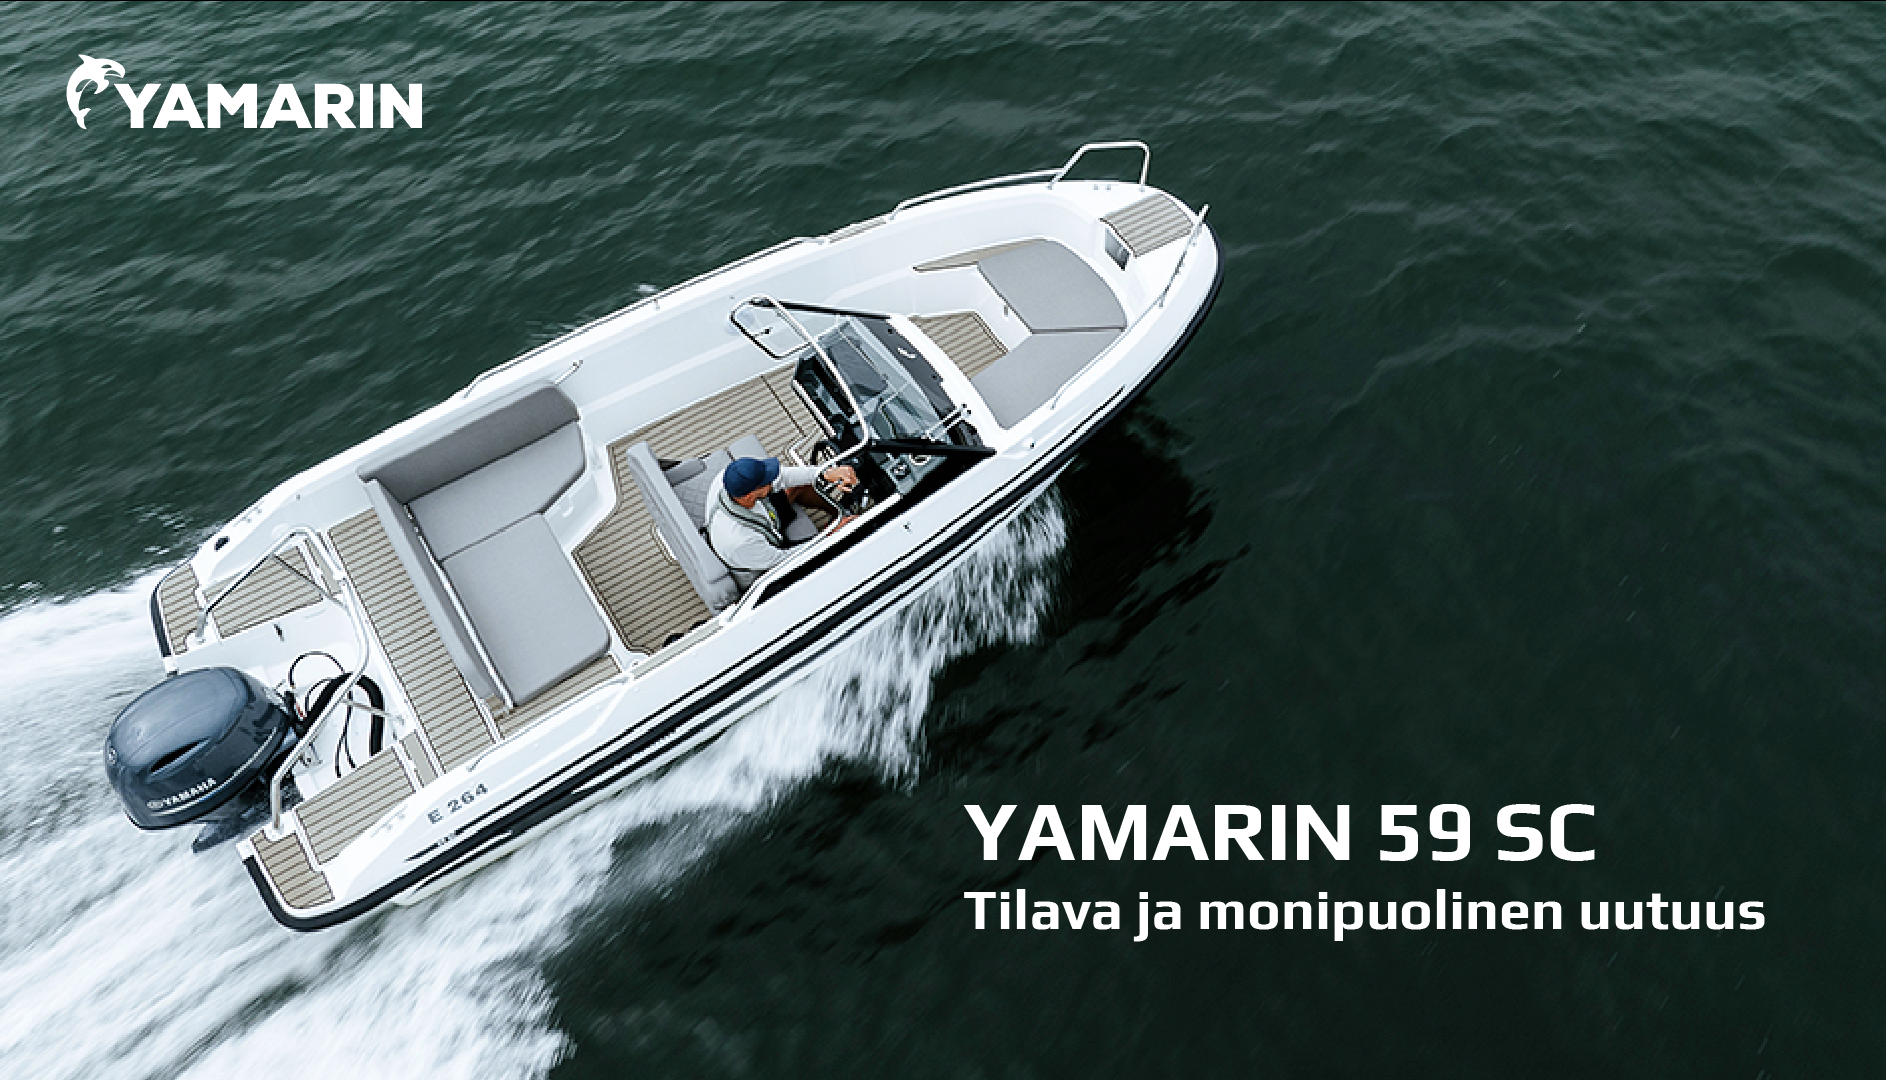 Uusi Yamarin 59 SC on monikäyttöinen, tilava sivupulpettivene!